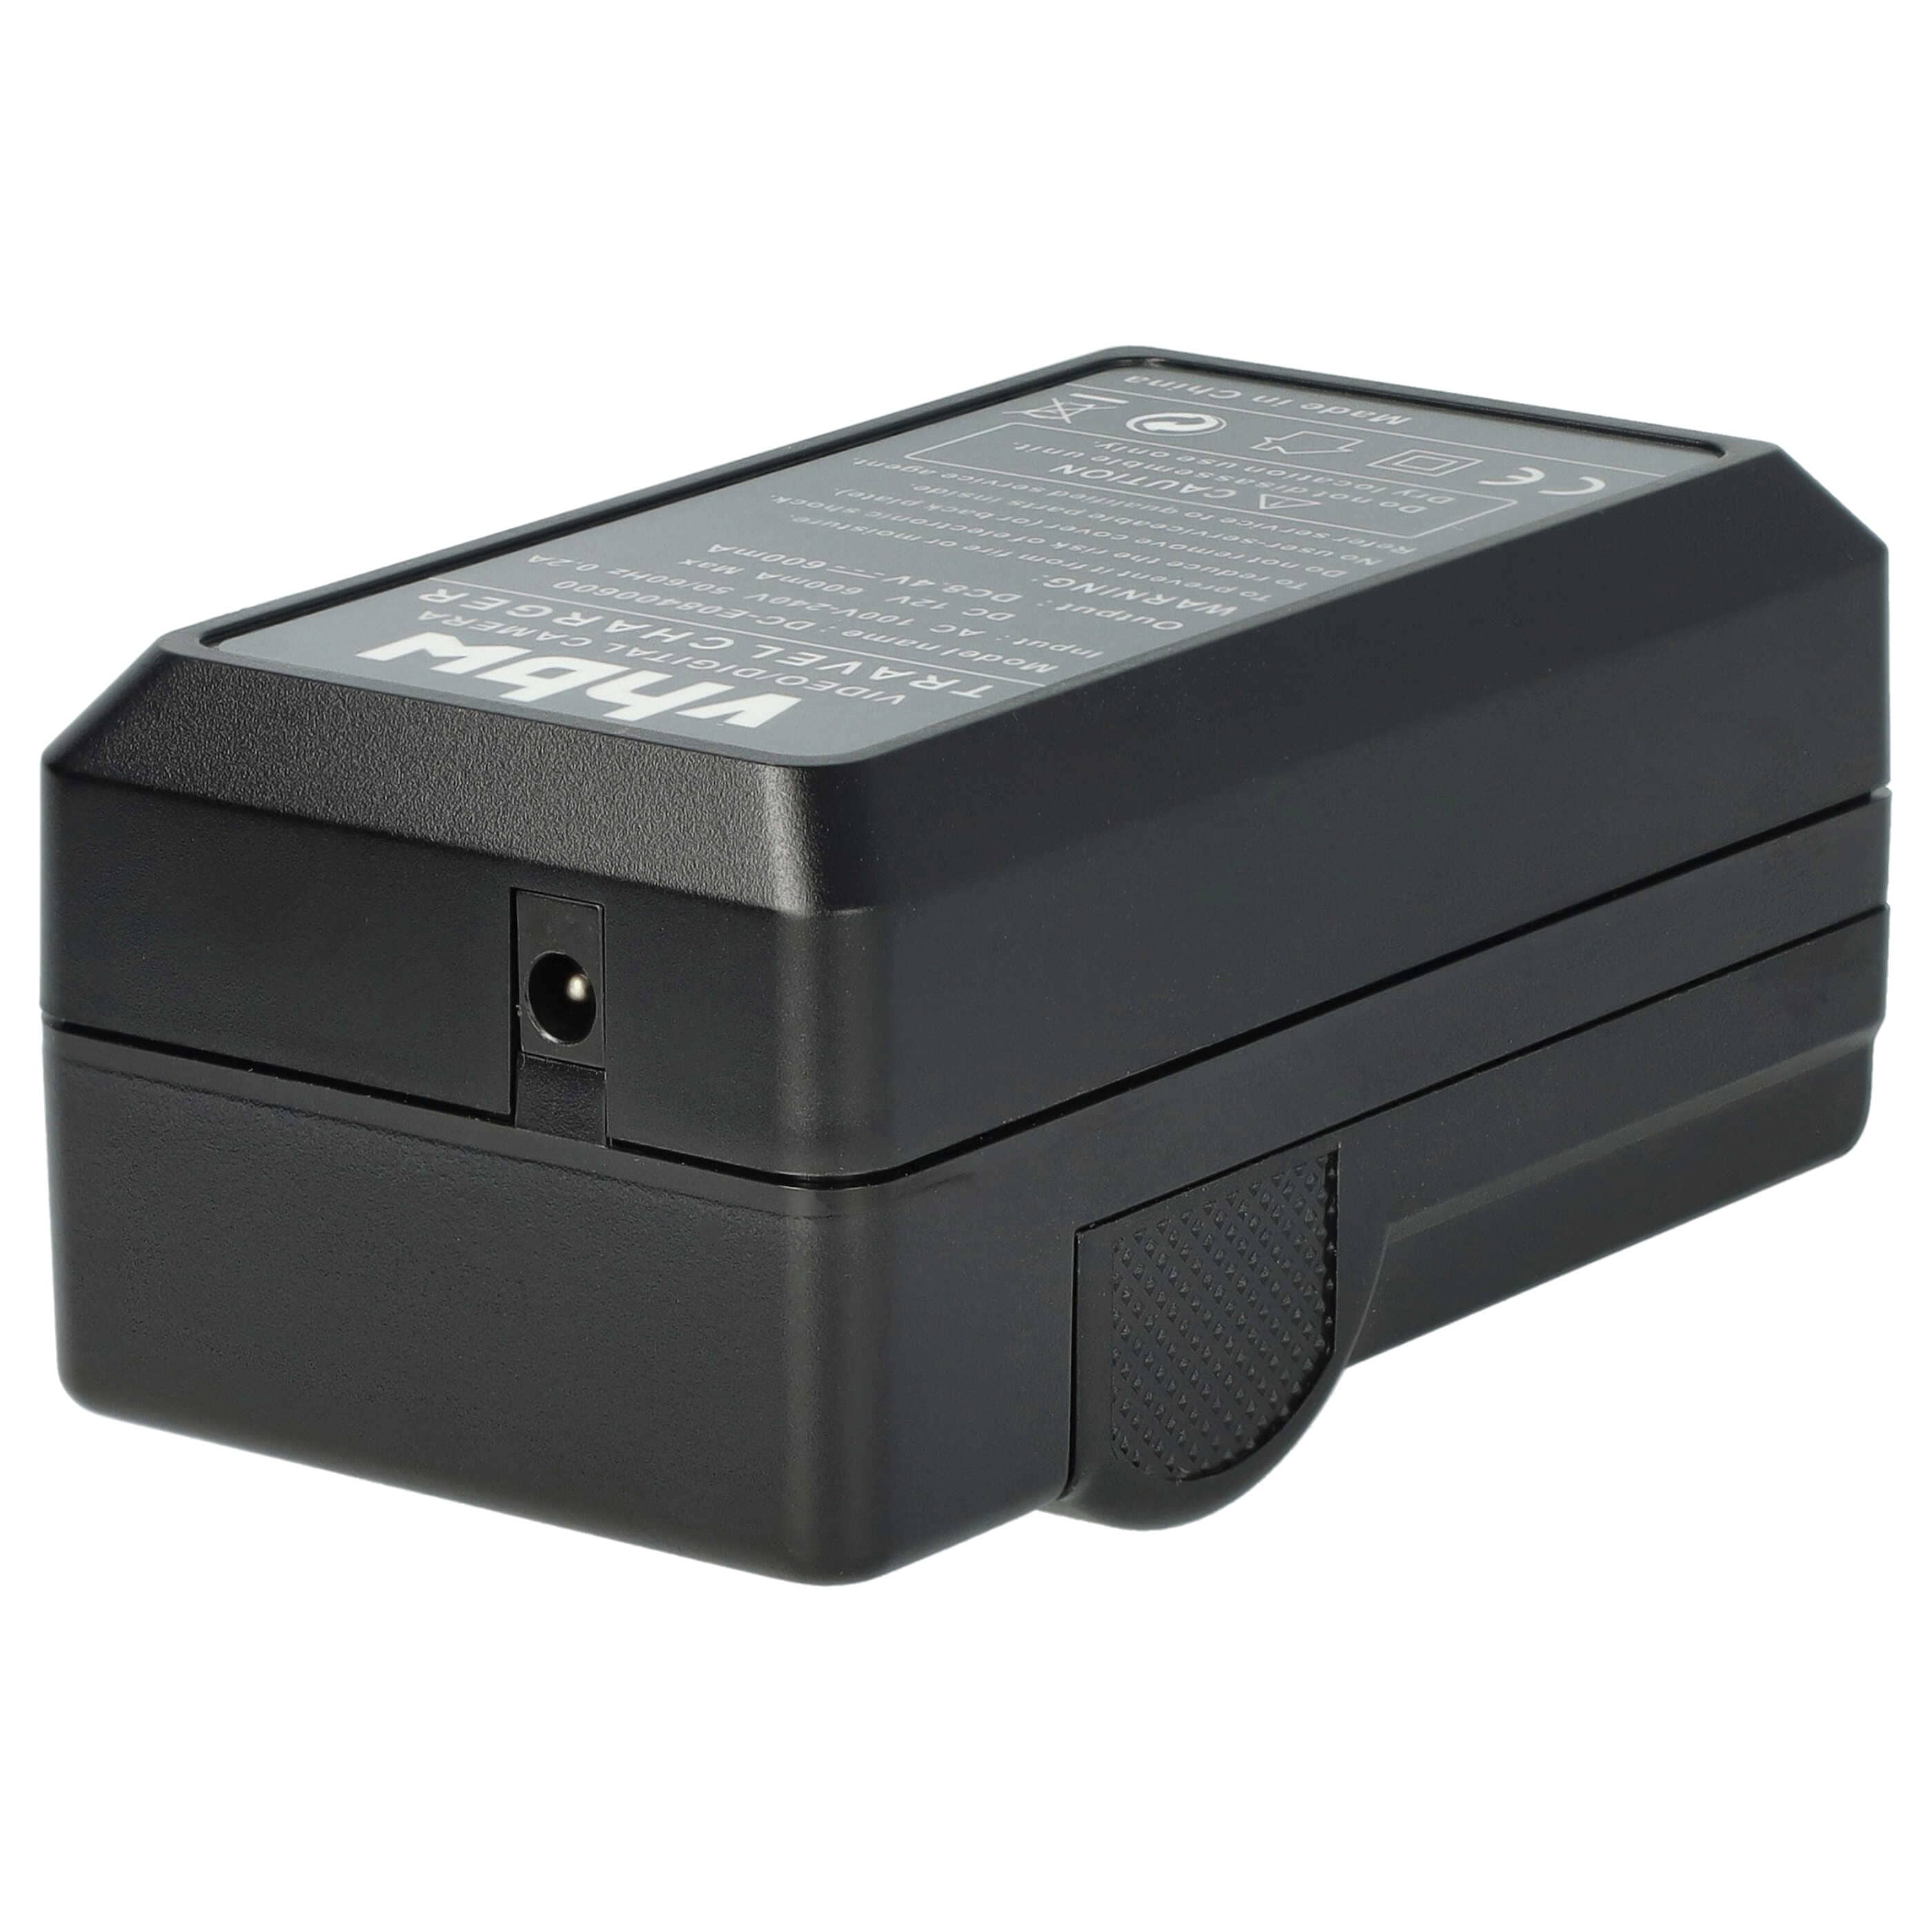 Ładowarka do aparatu HS900 i innych - ładowarka akumulatora 0,6 A, 8,4 V